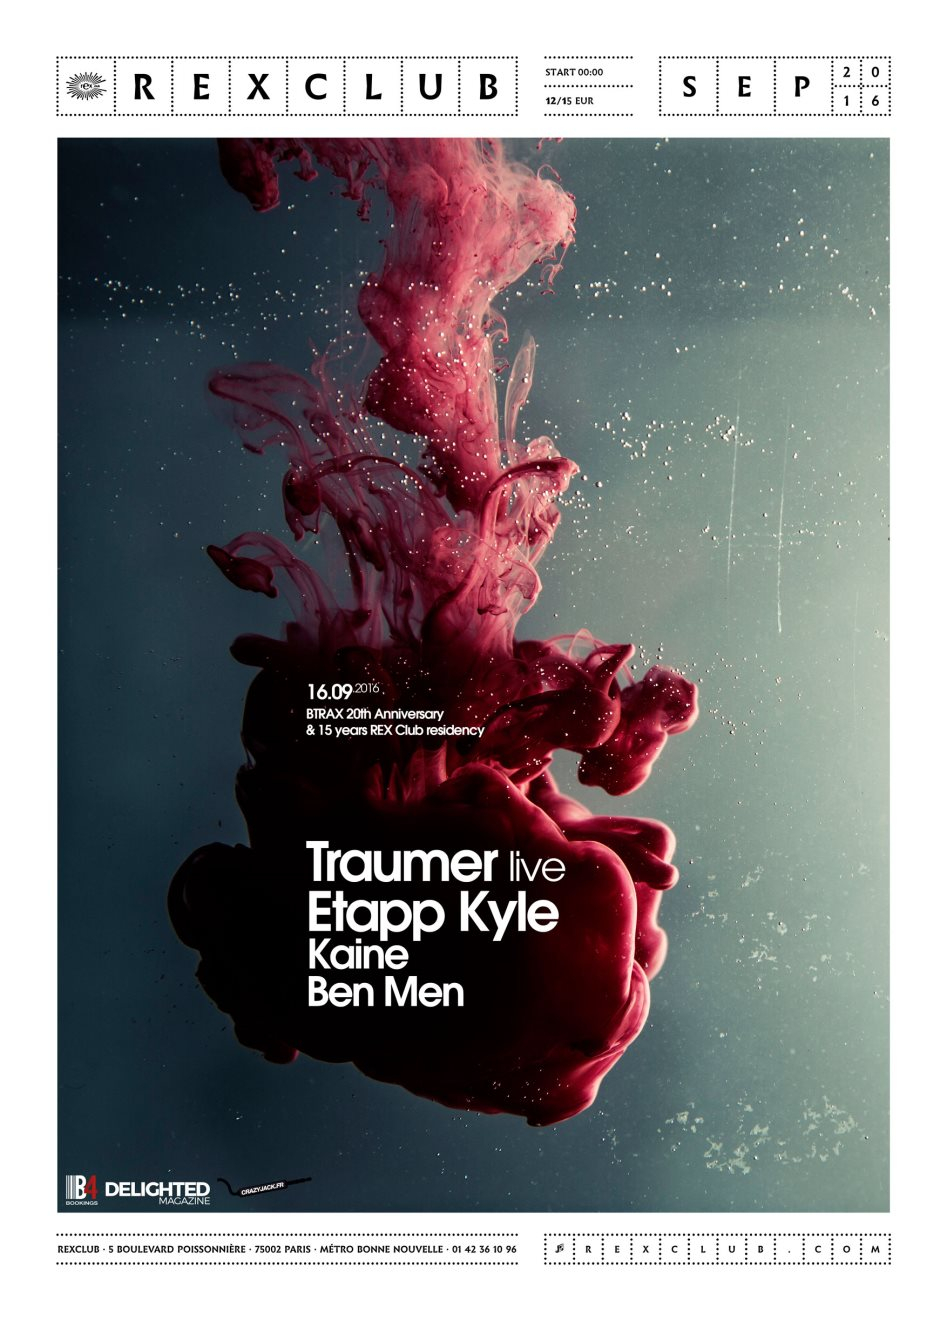 Btrax Night - 20th Anniversary: Traumer Live, Etapp Kyle, Kaine, Ben Men - Flyer front